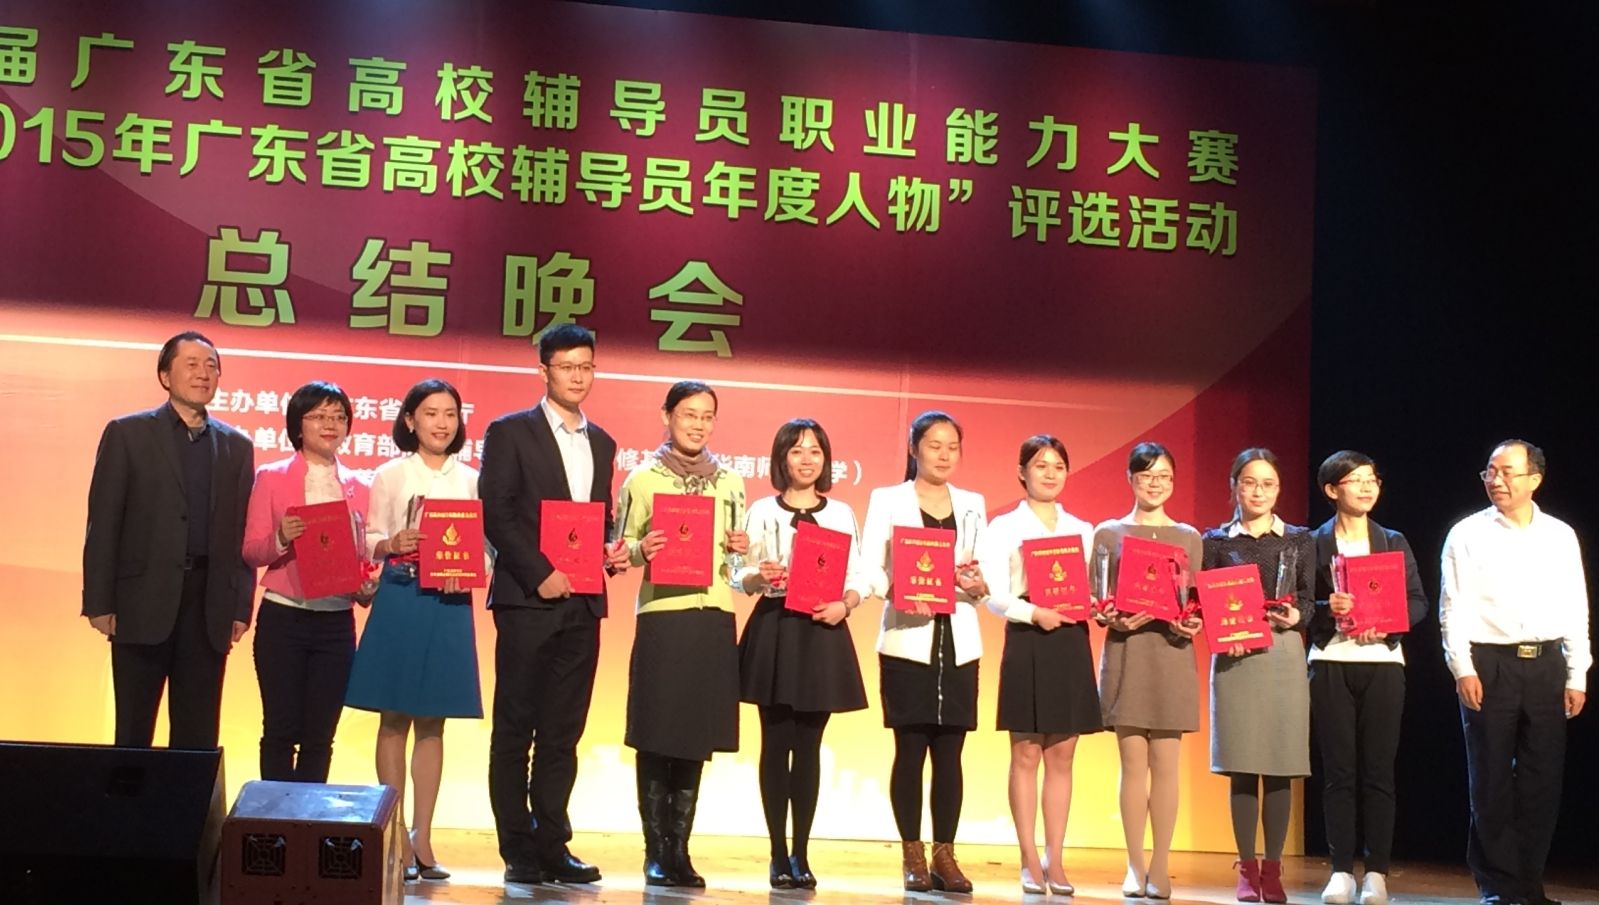 叶馨老师获第五届广东高校辅导员职业能力大赛一等奖